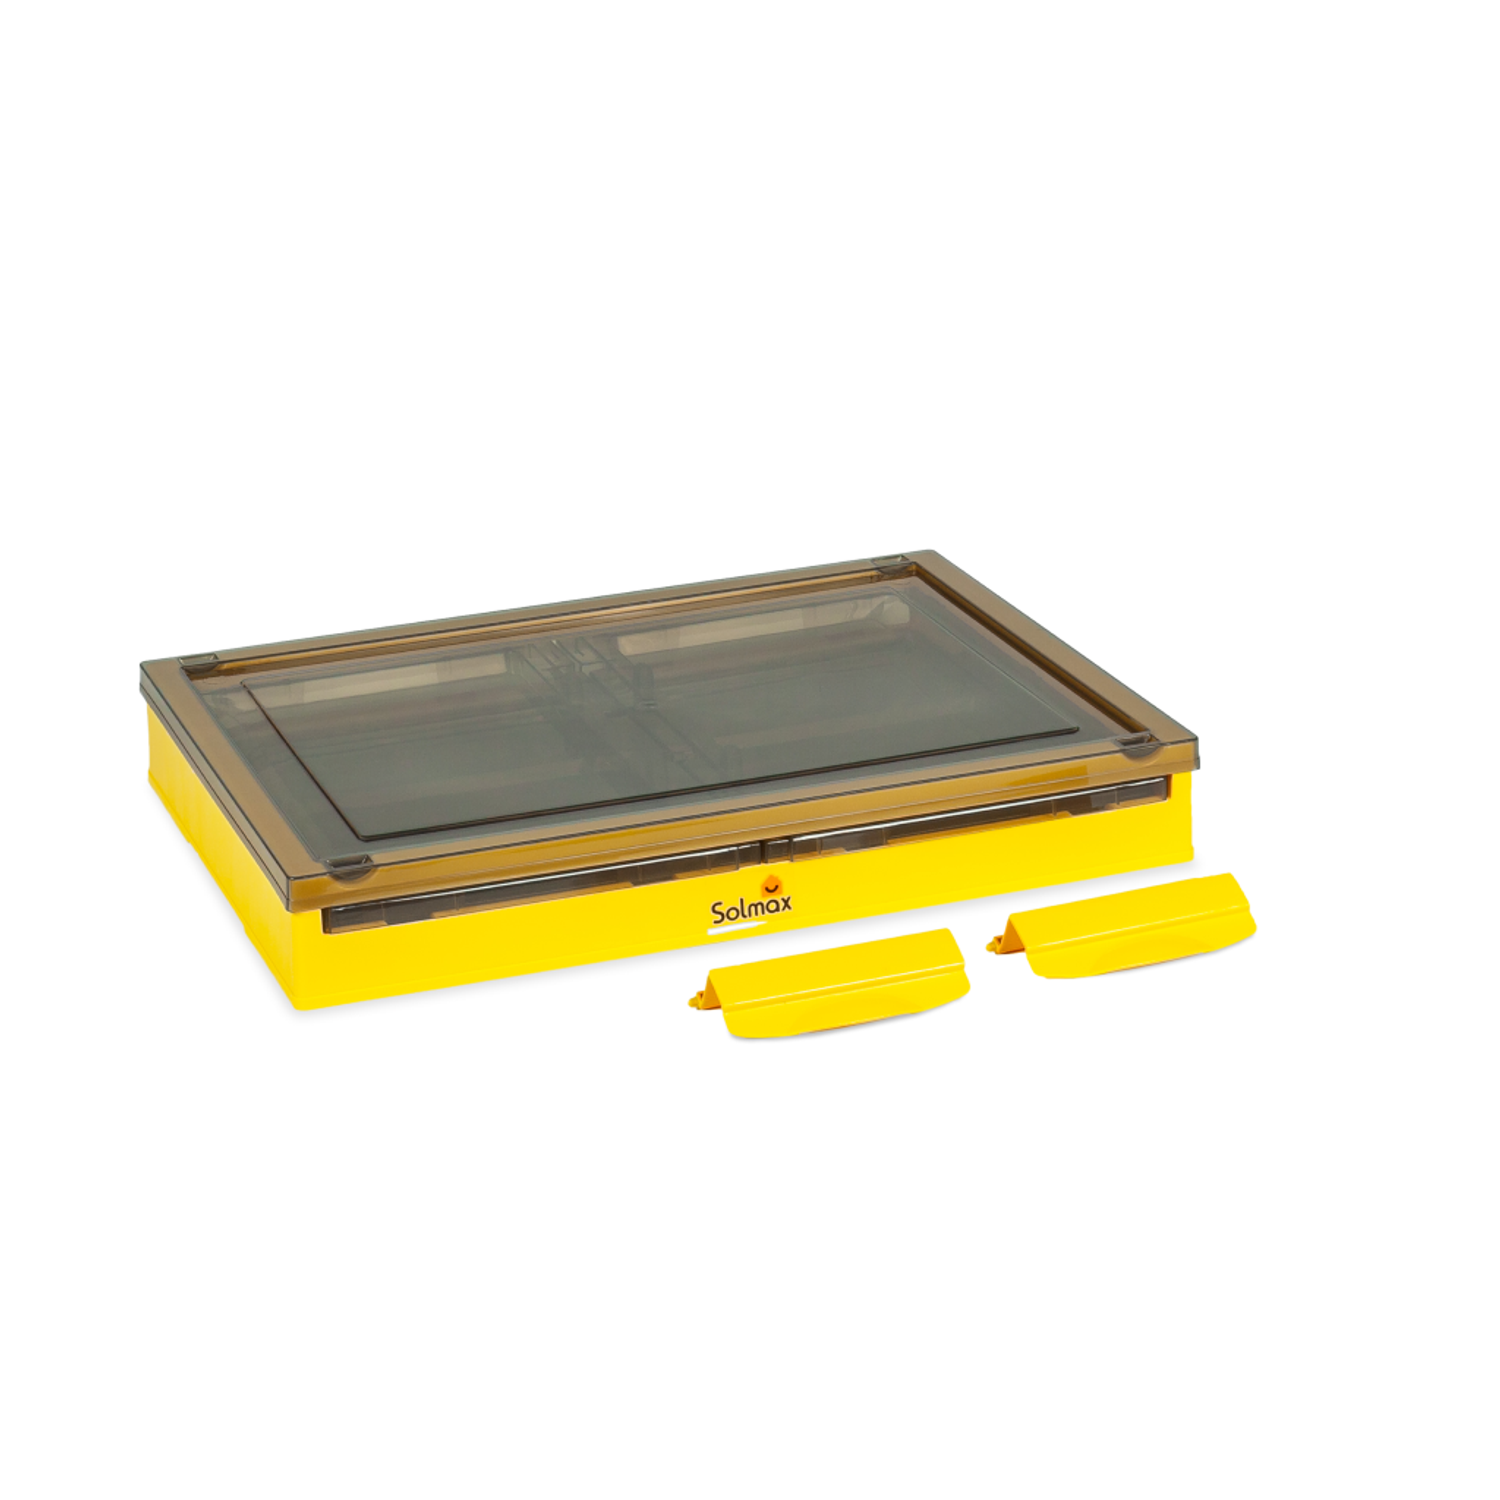 Ящик для хранения вещей Solmax прозрачный контейнер с крышкой на колесах 51х36х30 желтый - фото 6